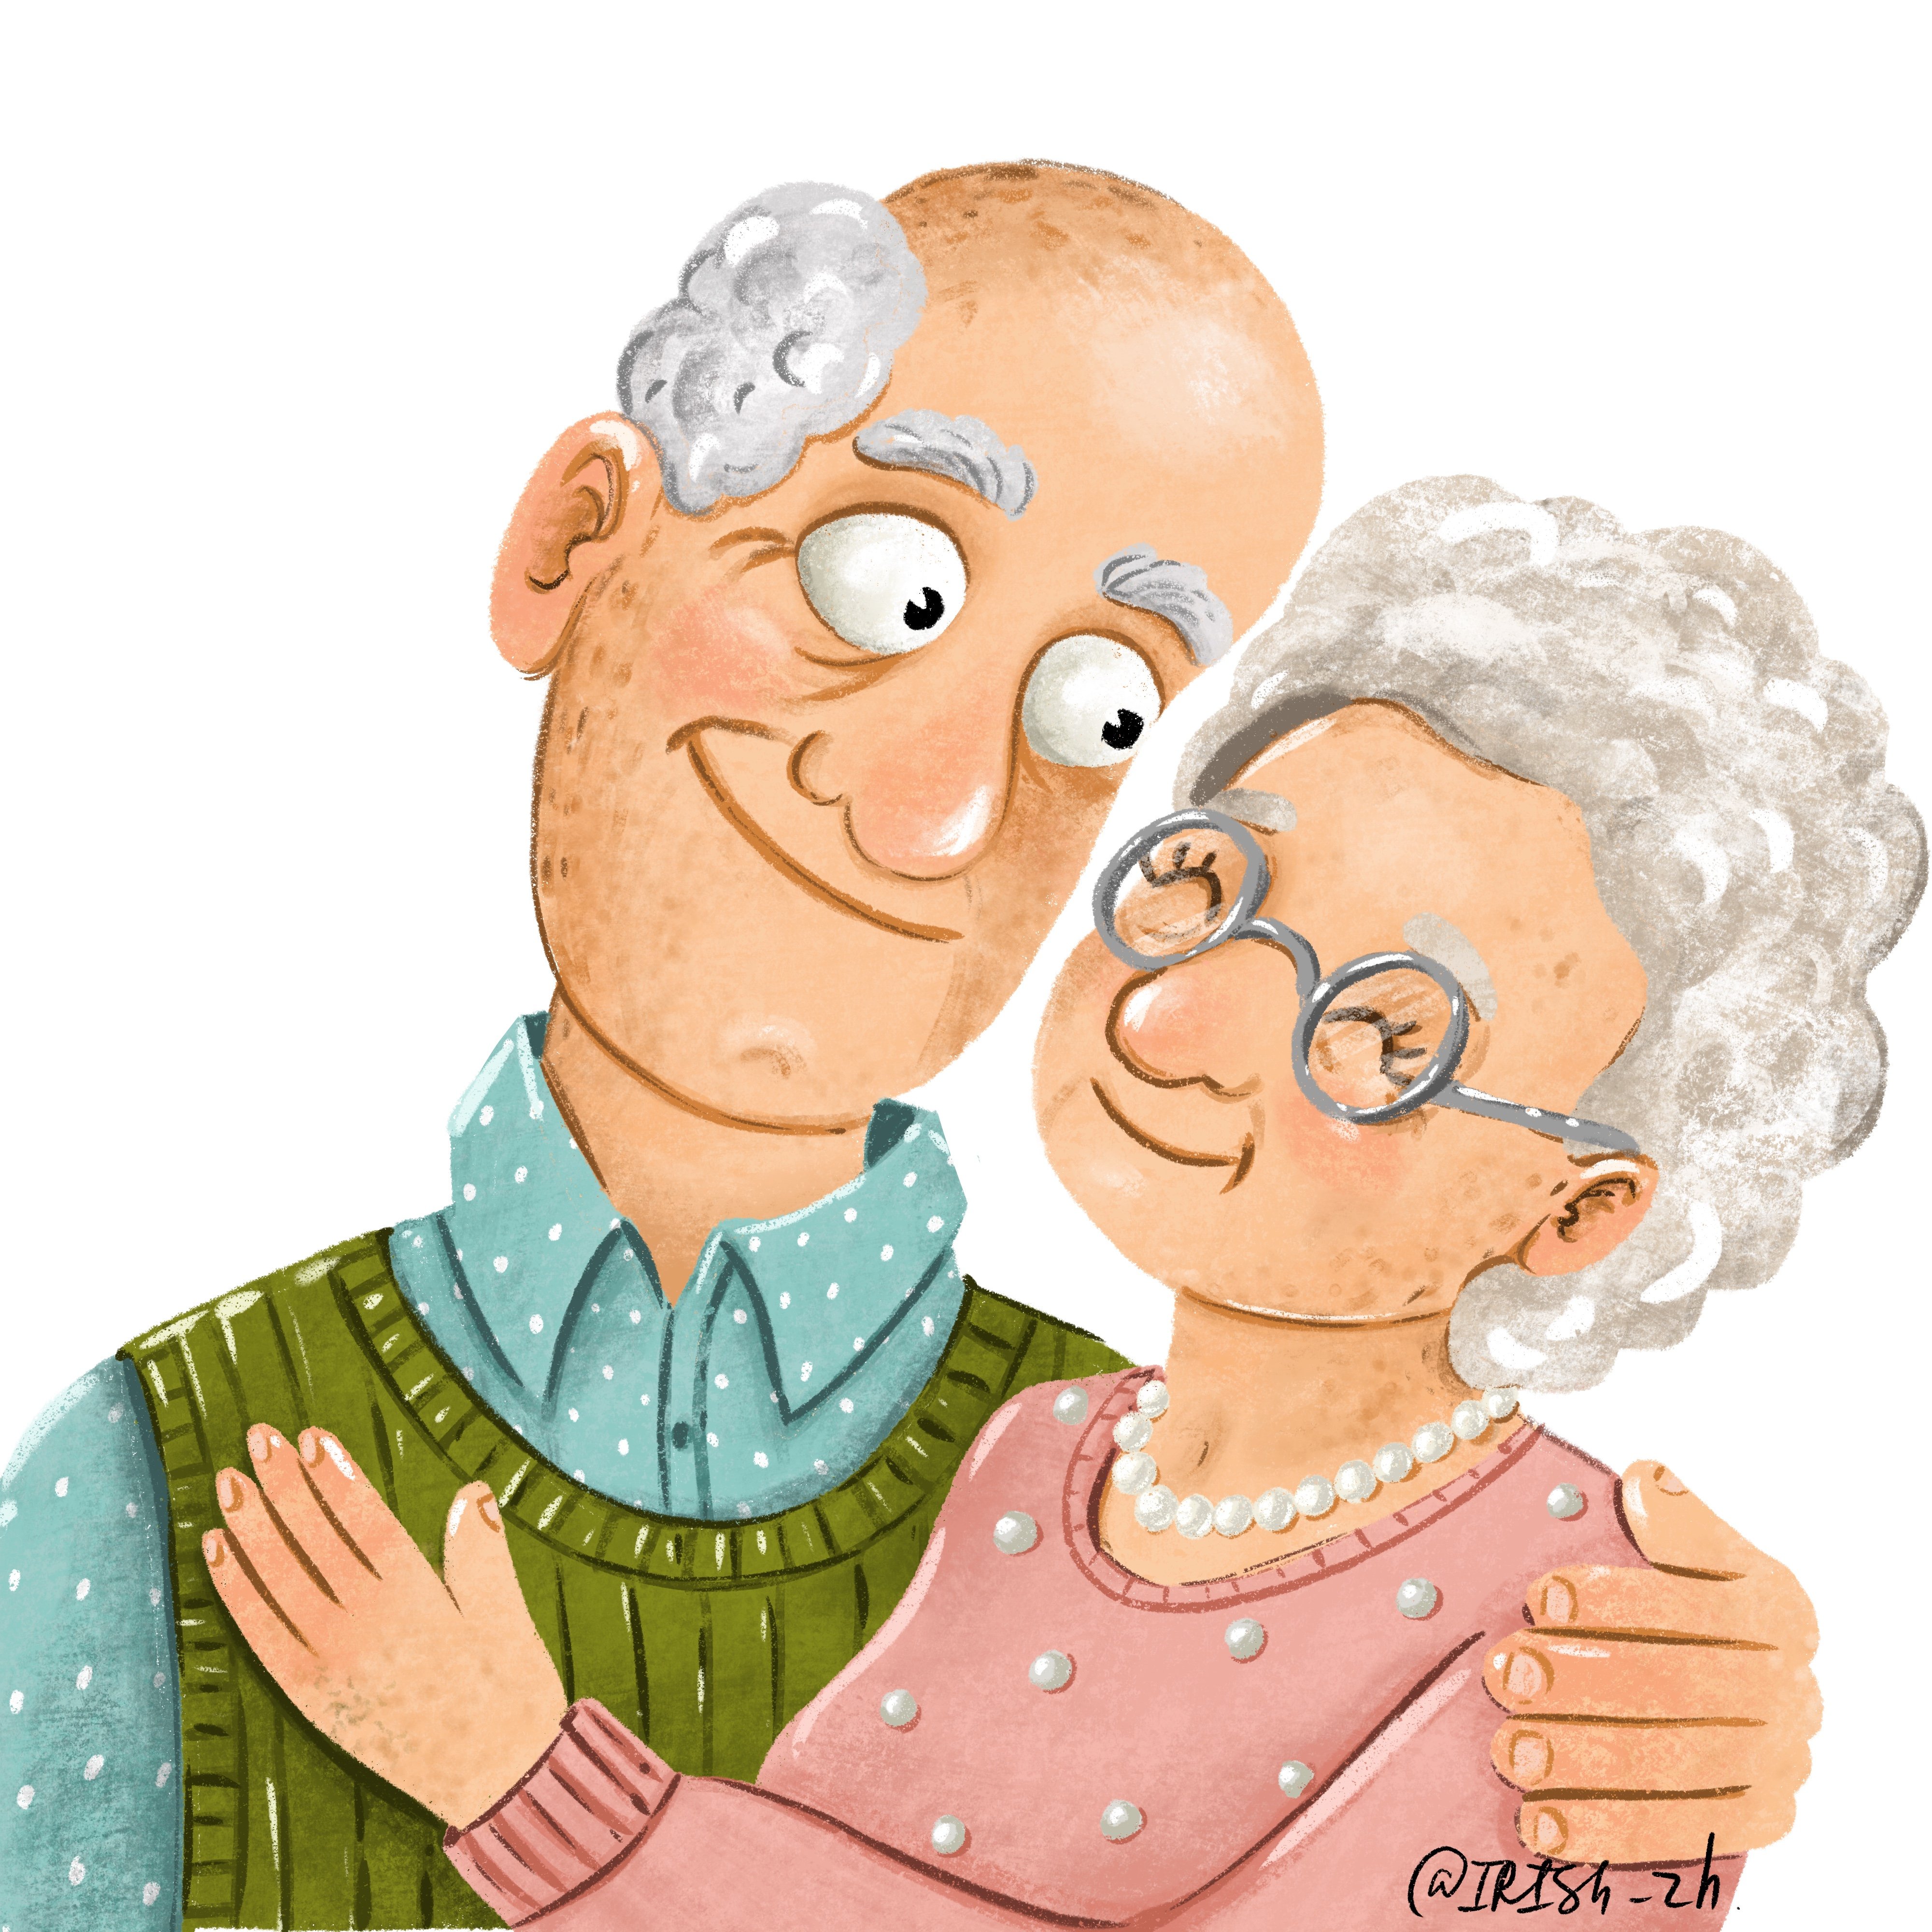 Про дедушек и пап. Бабушка и дедушка. Бабушка рядышком с дедушкой. Изображение бабушки и дедушки. Бабуля и дедуля.